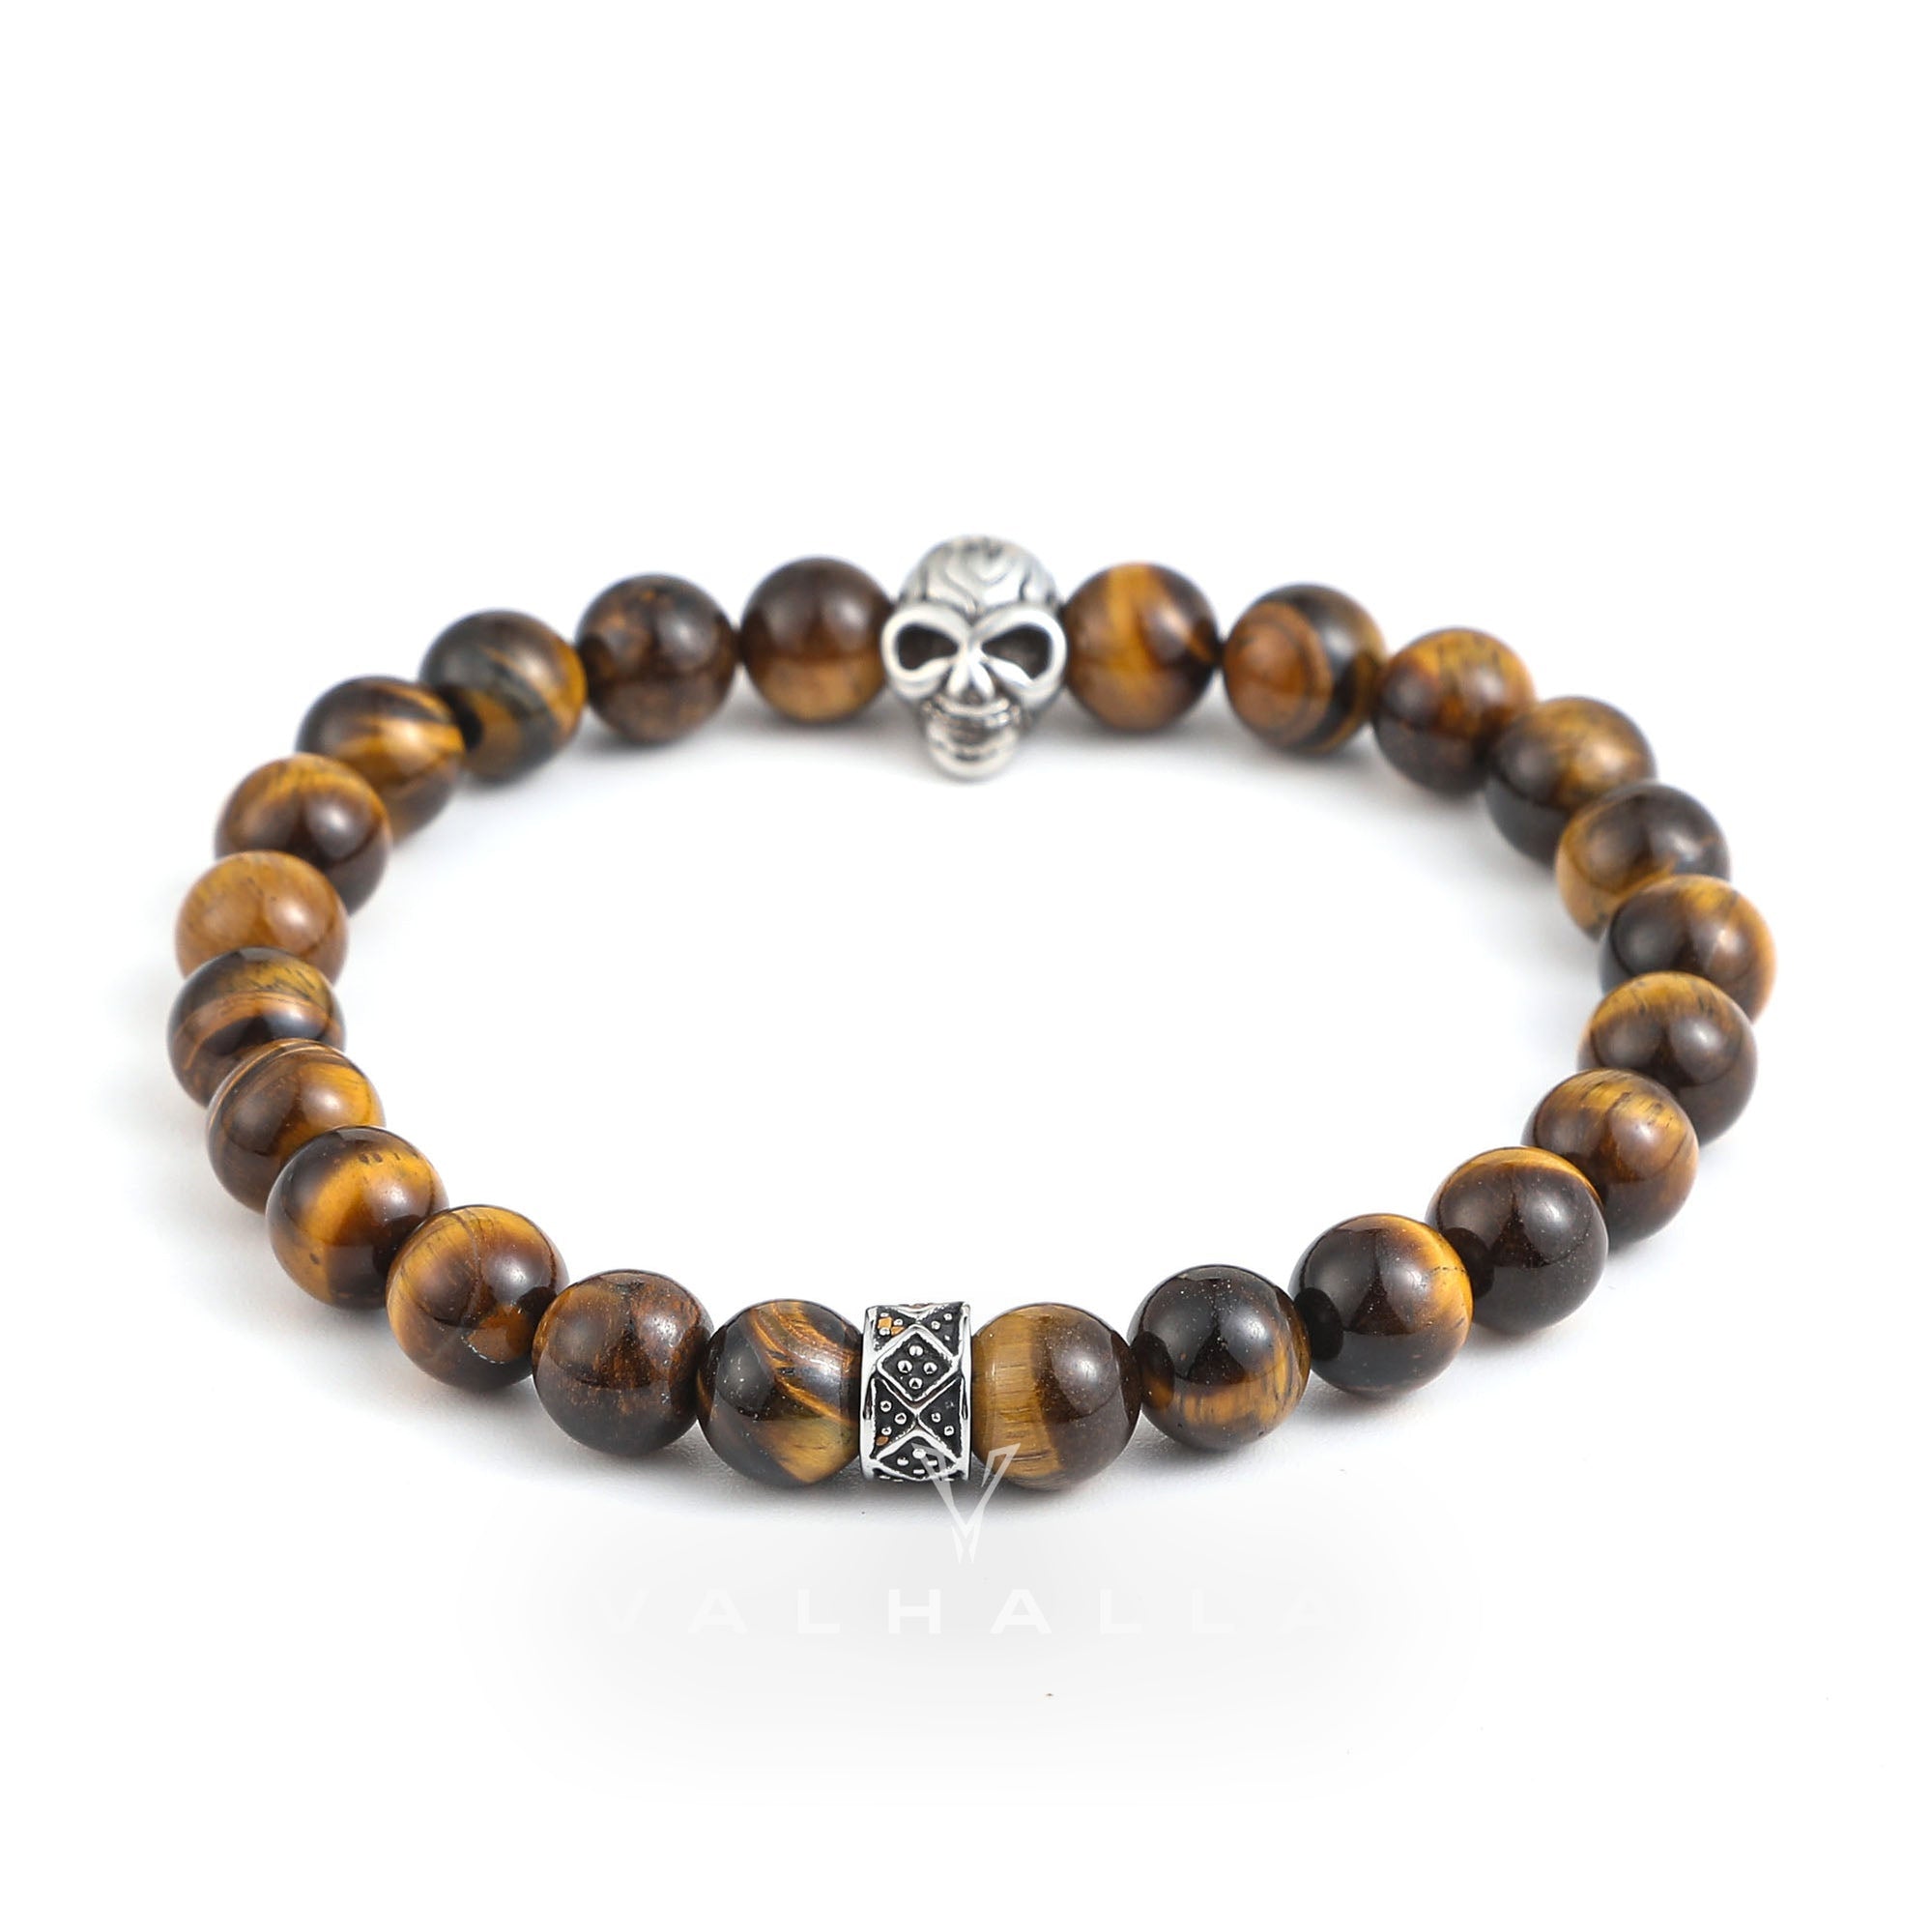 Skull Stainless Steel Beads Bracelet